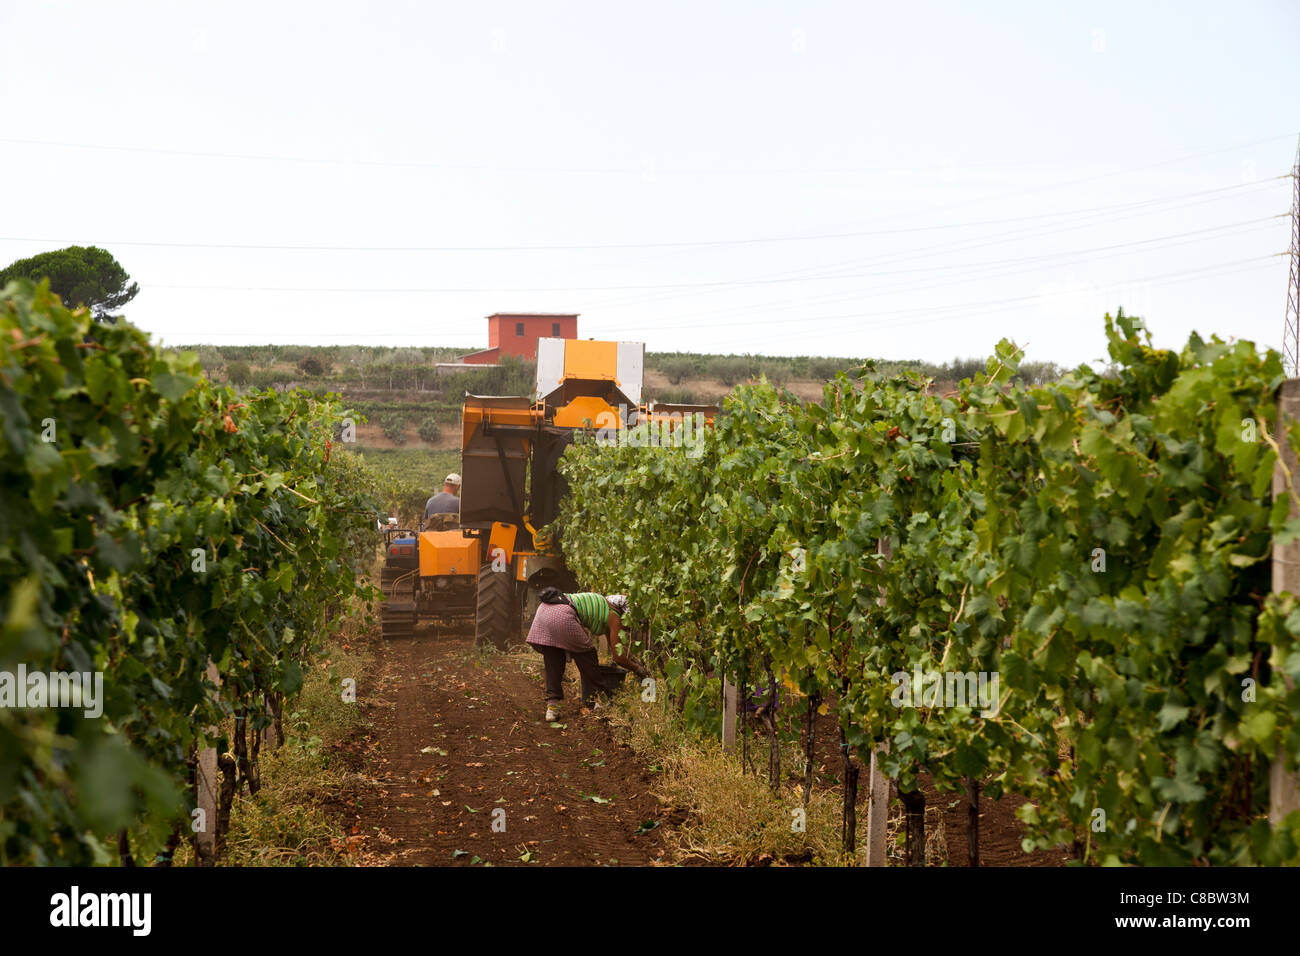 Cueilleurs de la main à la suite de la récolte de raisins de la récolteuse mécanique à Frascati, Italie Banque D'Images